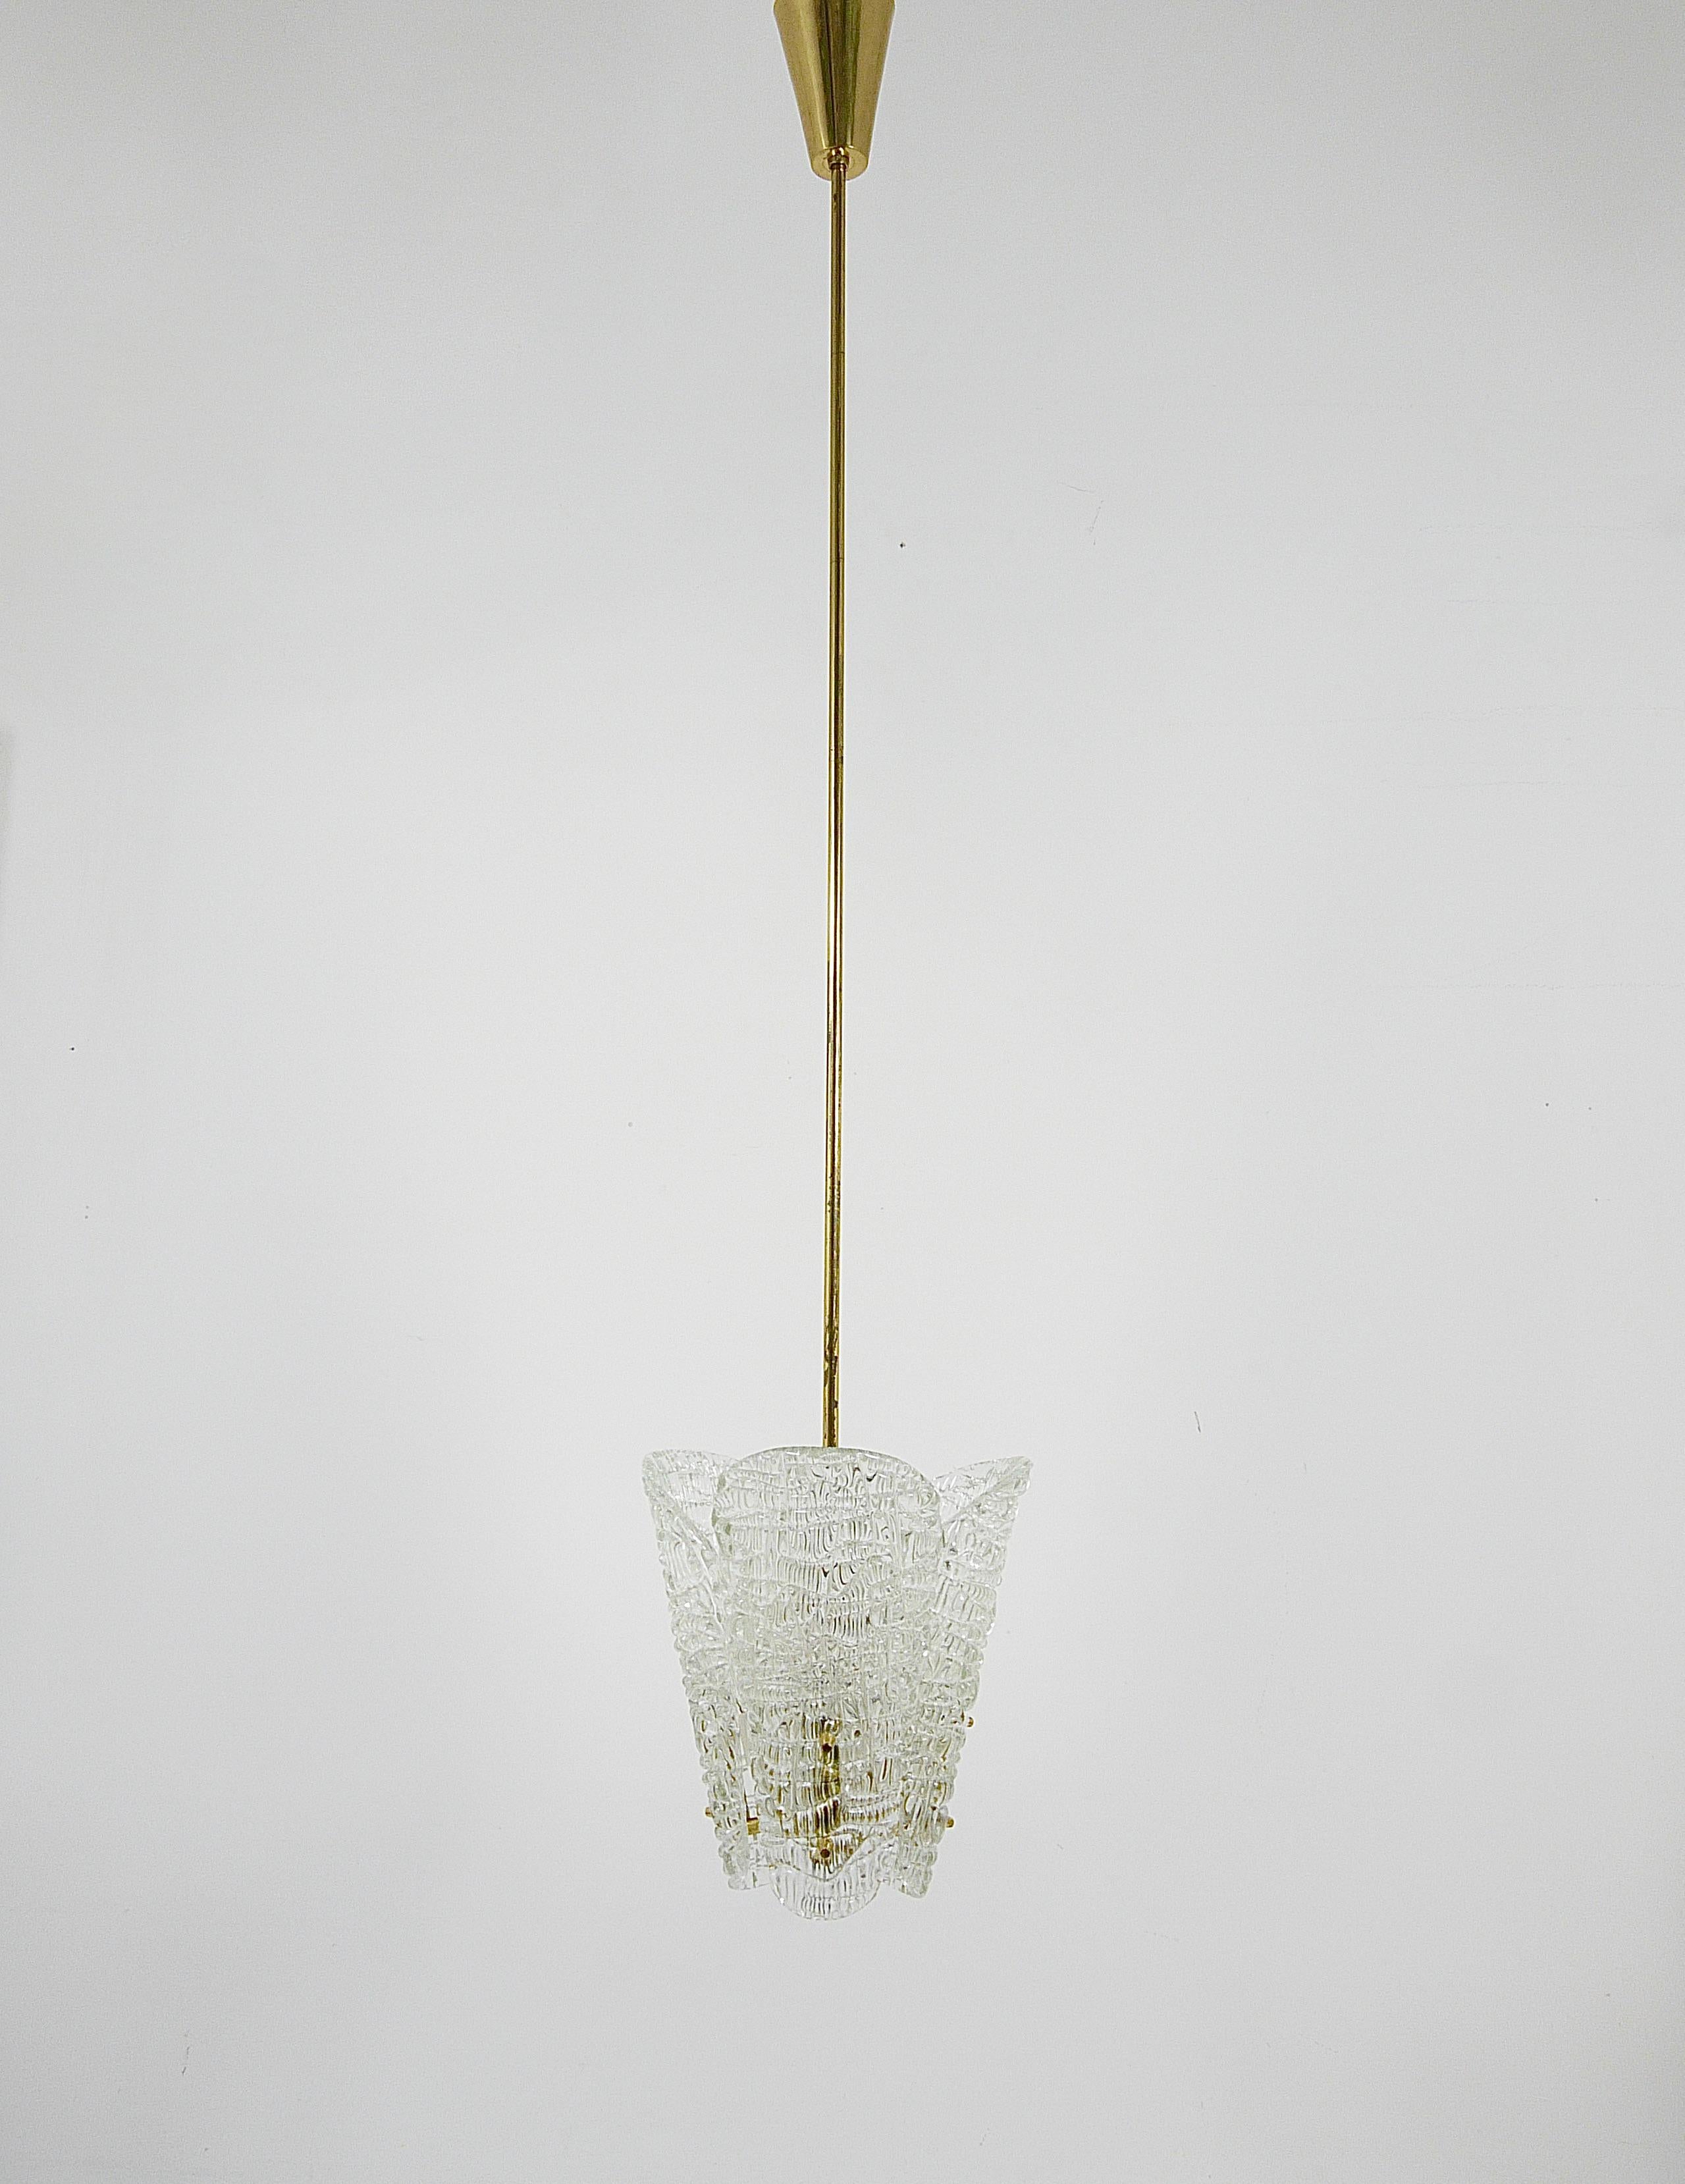 Ti presentiamo un incantevole lampadario in ottone di J&T. Kalmar di Vienna, Austria, realizzato negli anni '50. Questo bellissimo pezzo è caratterizzato da tre paralumi in vetro testurizzato a forma di cucchiaio, elegantemente sospesi da una